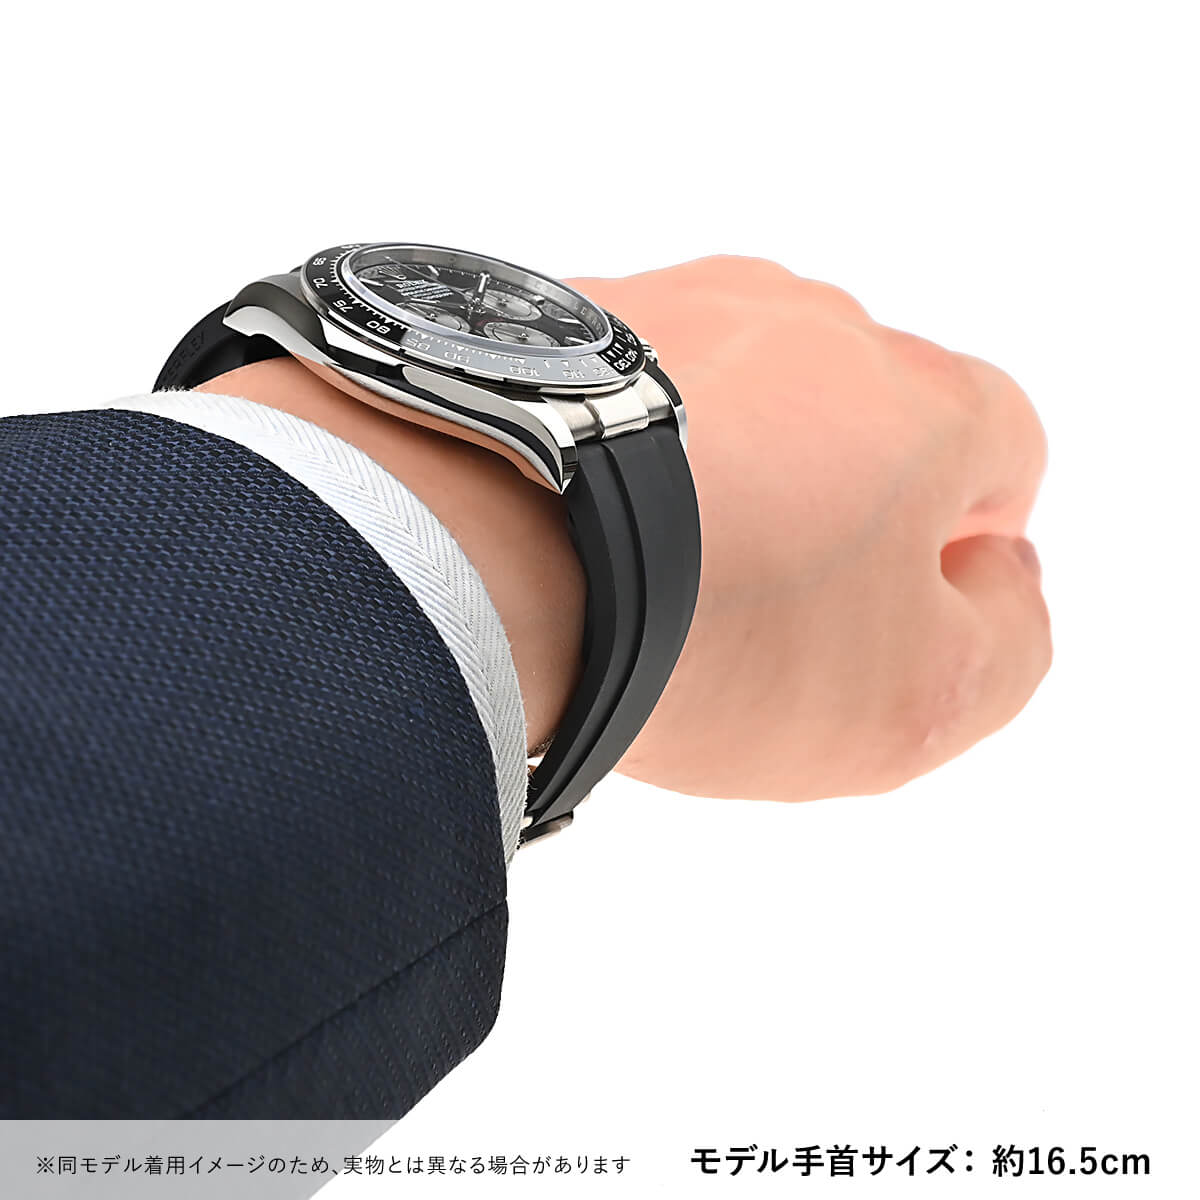 ロレックス ROLEX コスモグラフ デイトナ 126519LN 新品 メンズ 腕時計